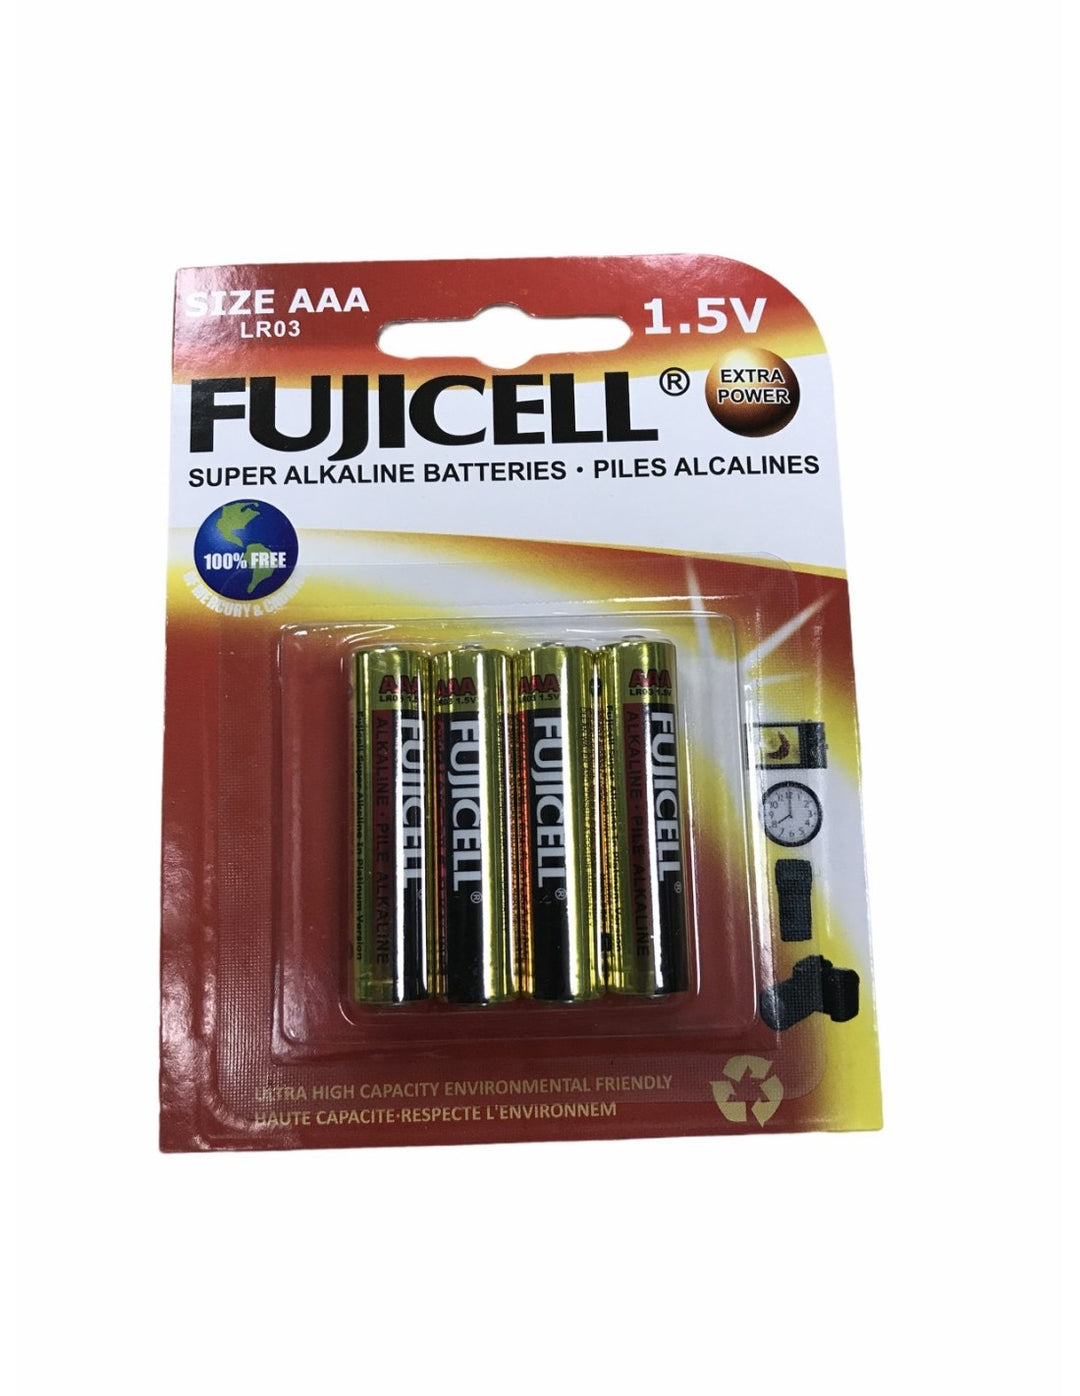 Fujicell AAA Super Alkaline Batteries 1.5V